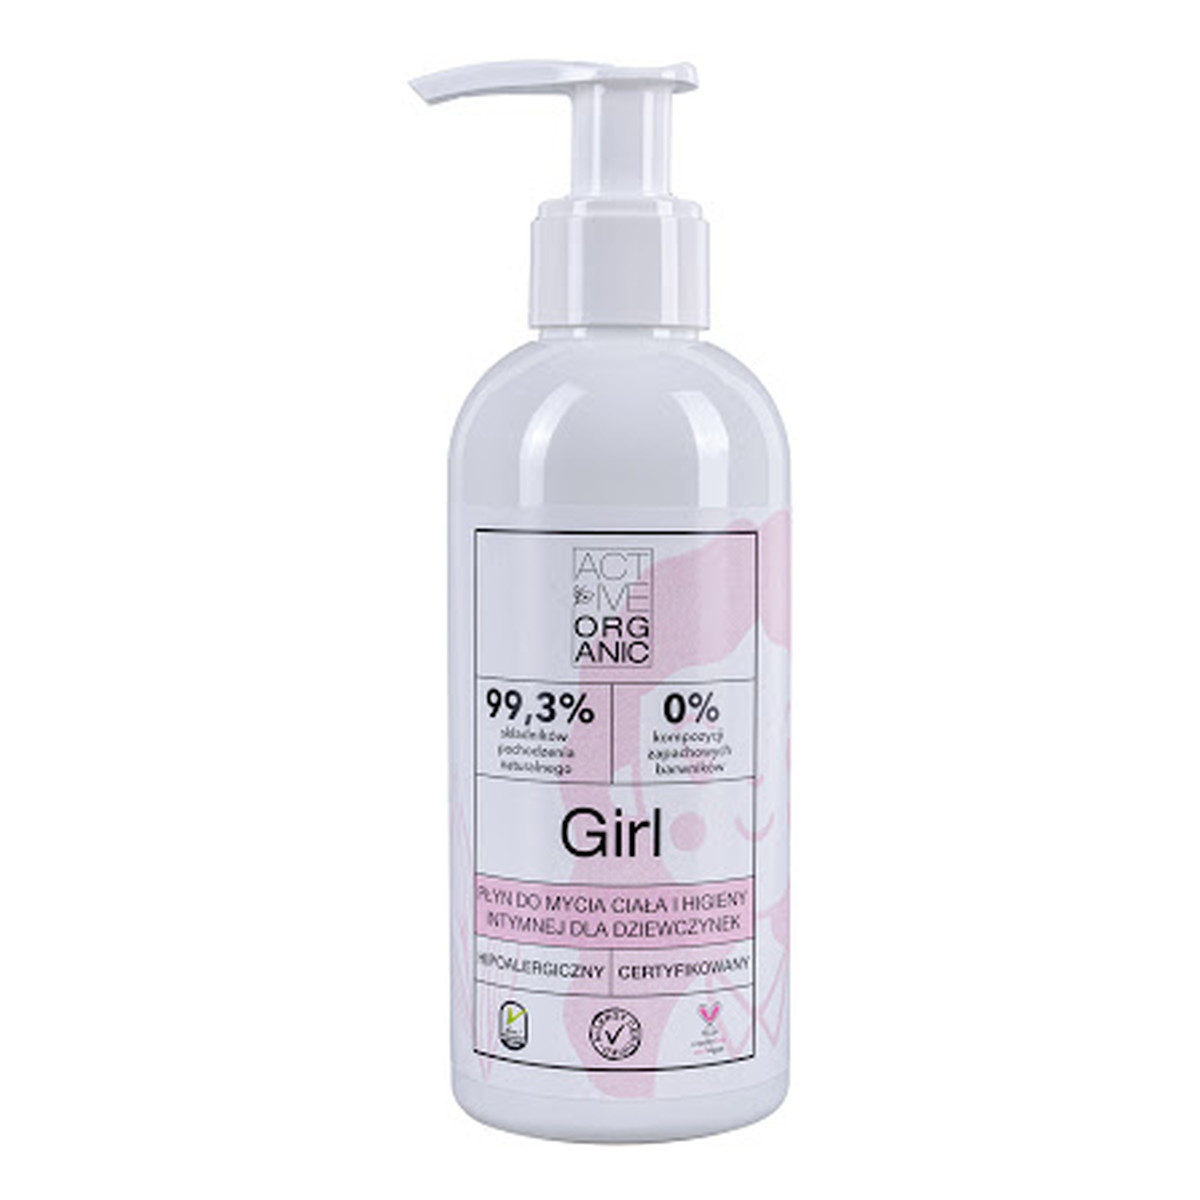 Active Organic Girl płyn do mycia ciała i higieny intymnej dla dziewczynek 200ml